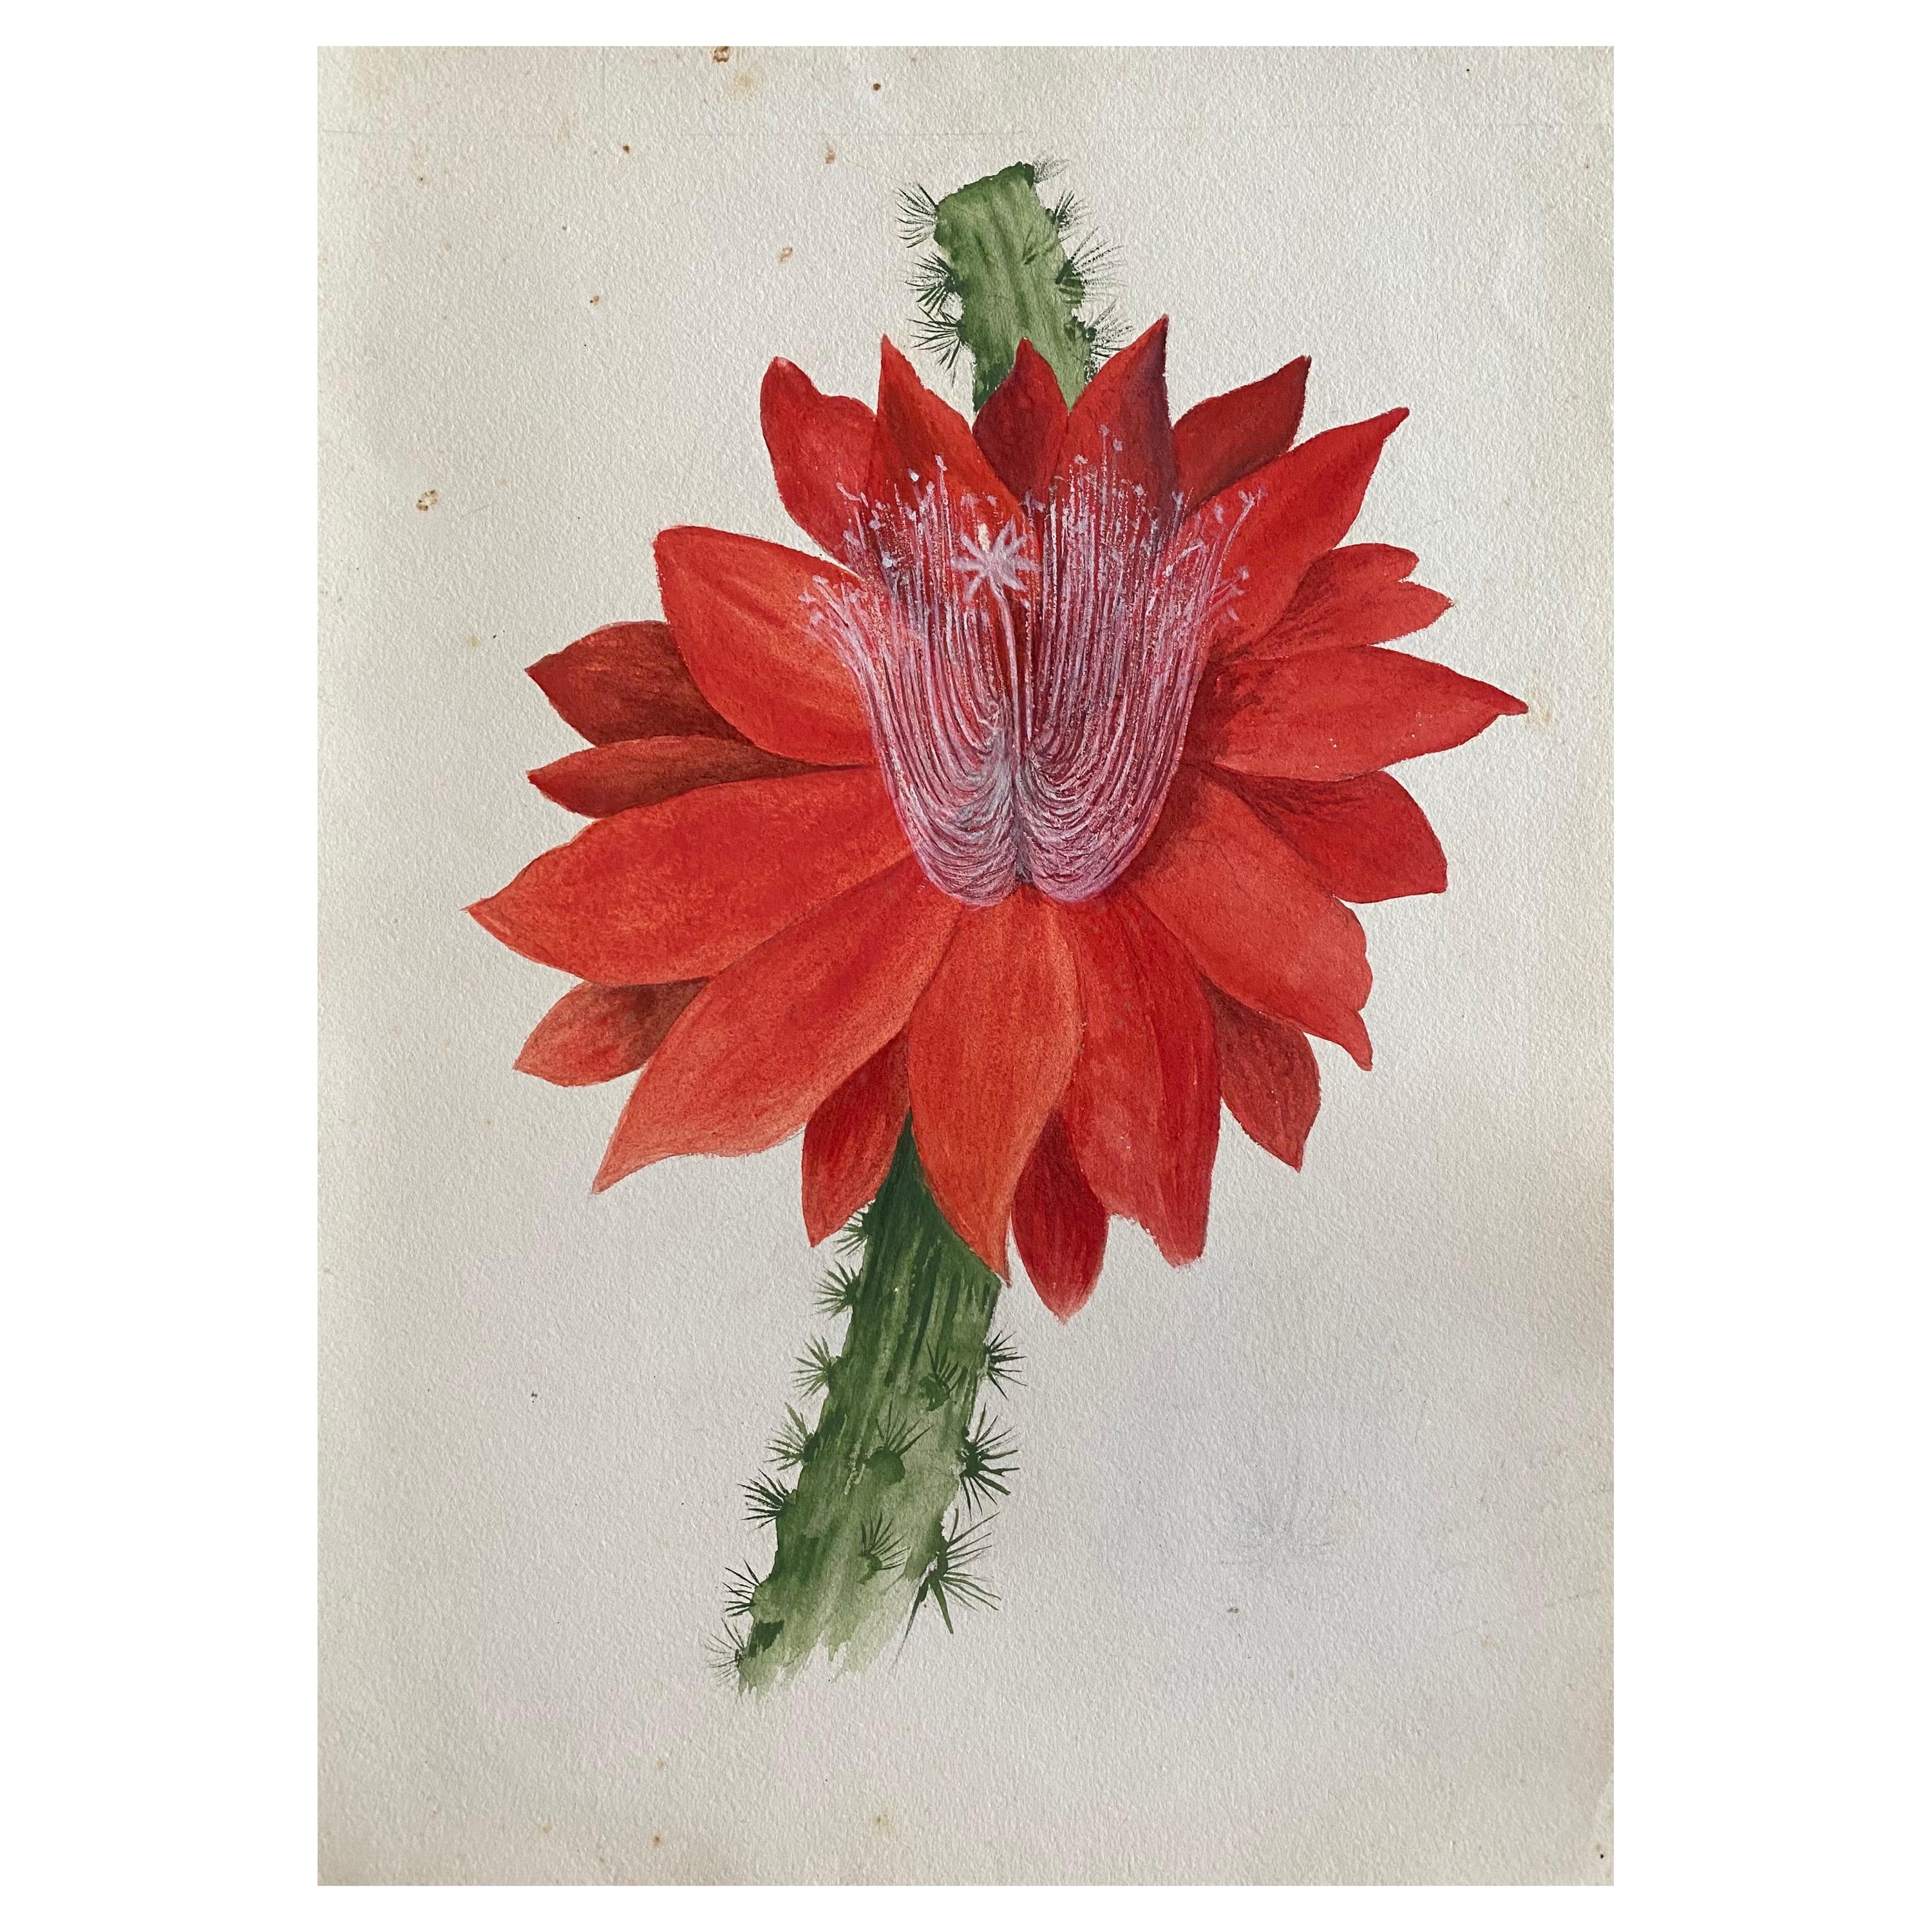 Belle peinture à l'aquarelle abstraite britannique ancienne de style bohémien, fleur rouge, vers 1900